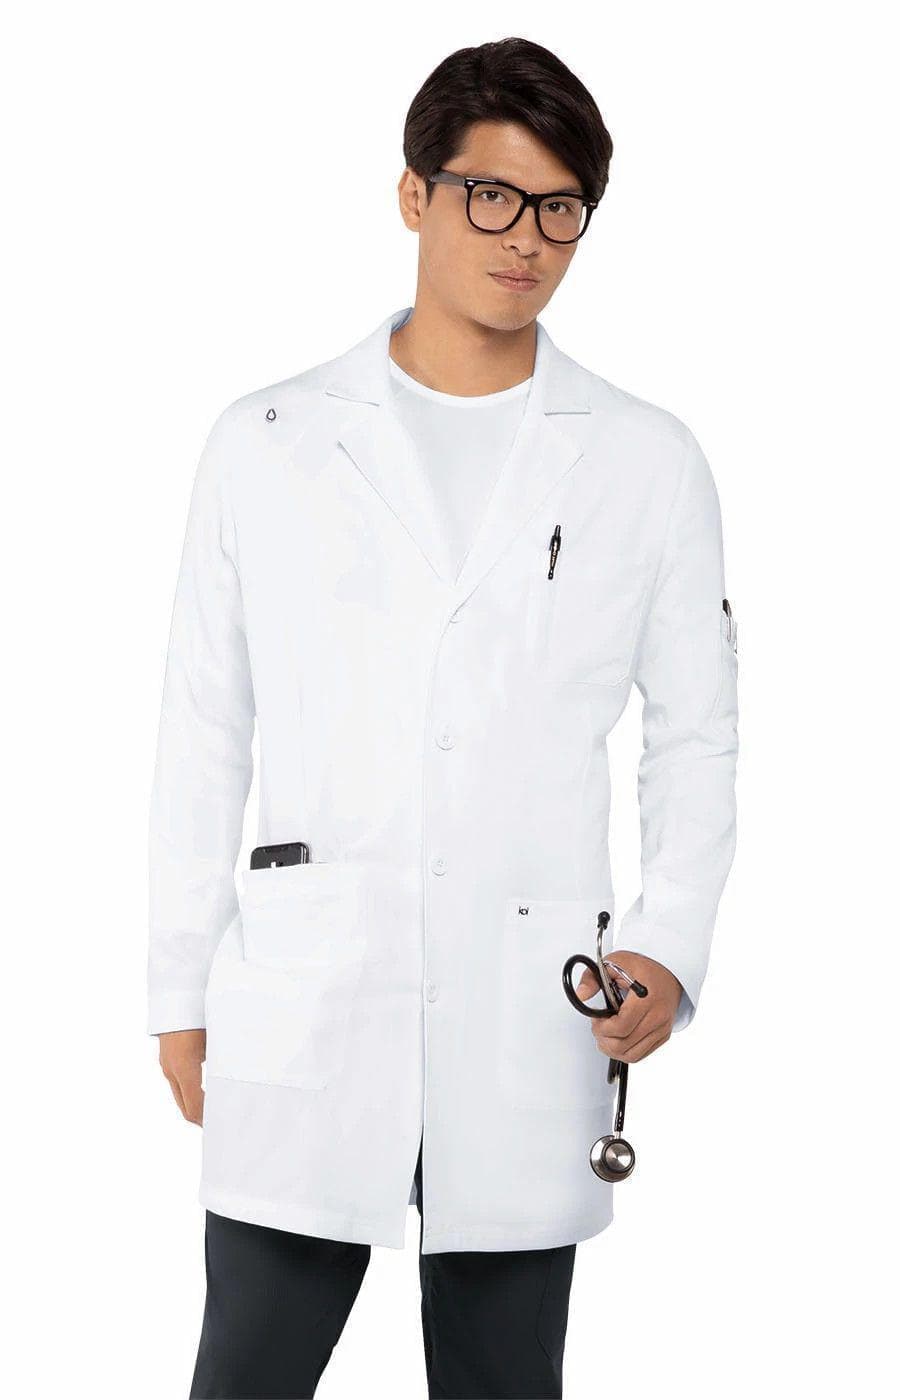 456 لابكوت طبي هيز ايفري داي كوي الرجاليLabcoat - دكتور هاوس للأزياء الطبية